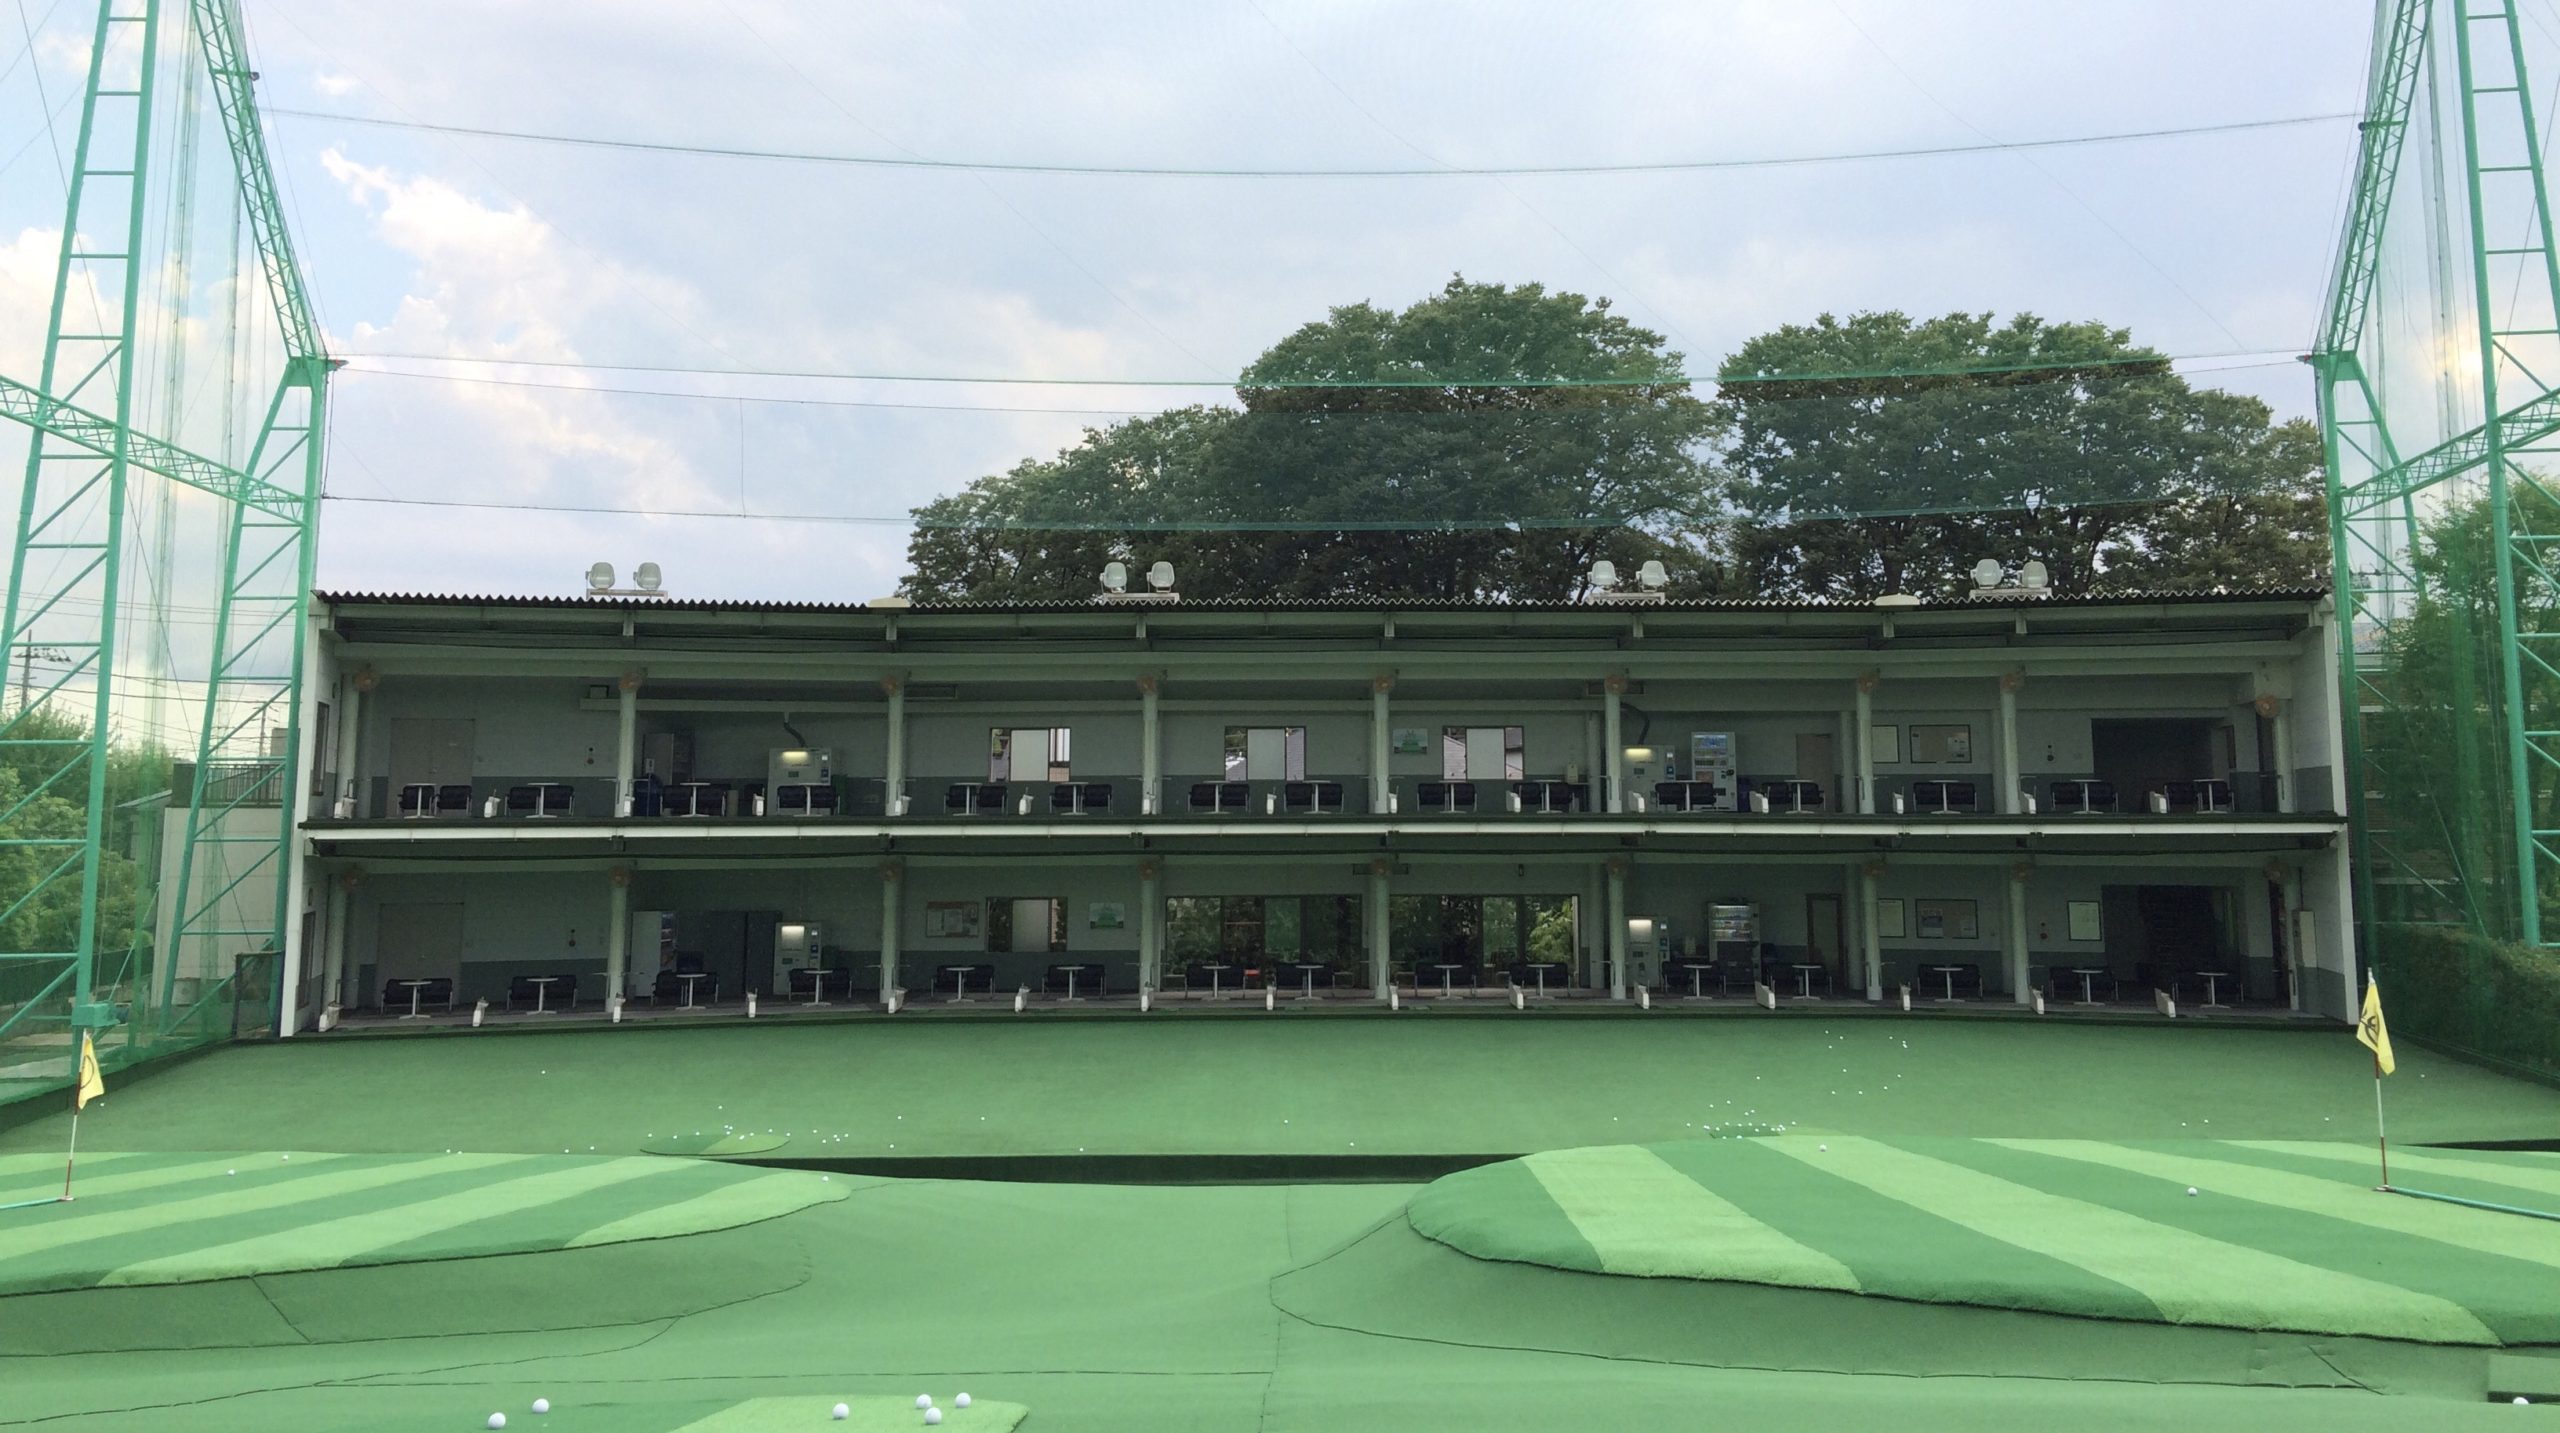 ニュー成城ゴルフセンターは世田谷通沿いにあり、わかりやすい